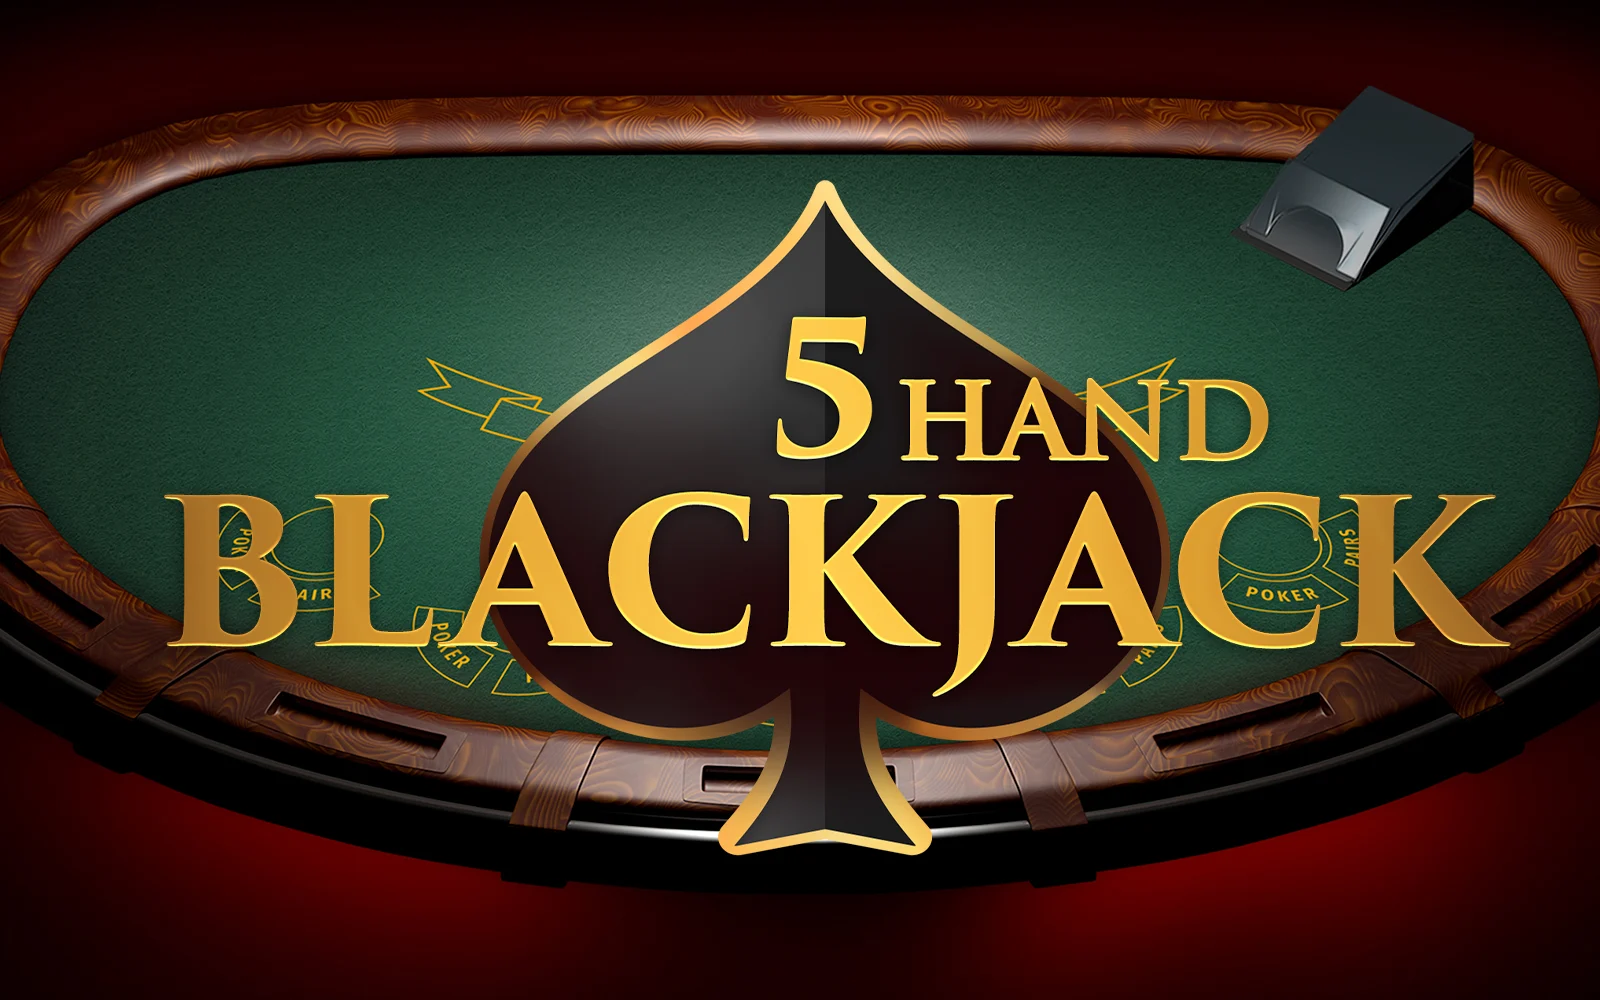 Starcasino.be online casino üzerinden 5 Hand Blackjack oynayın